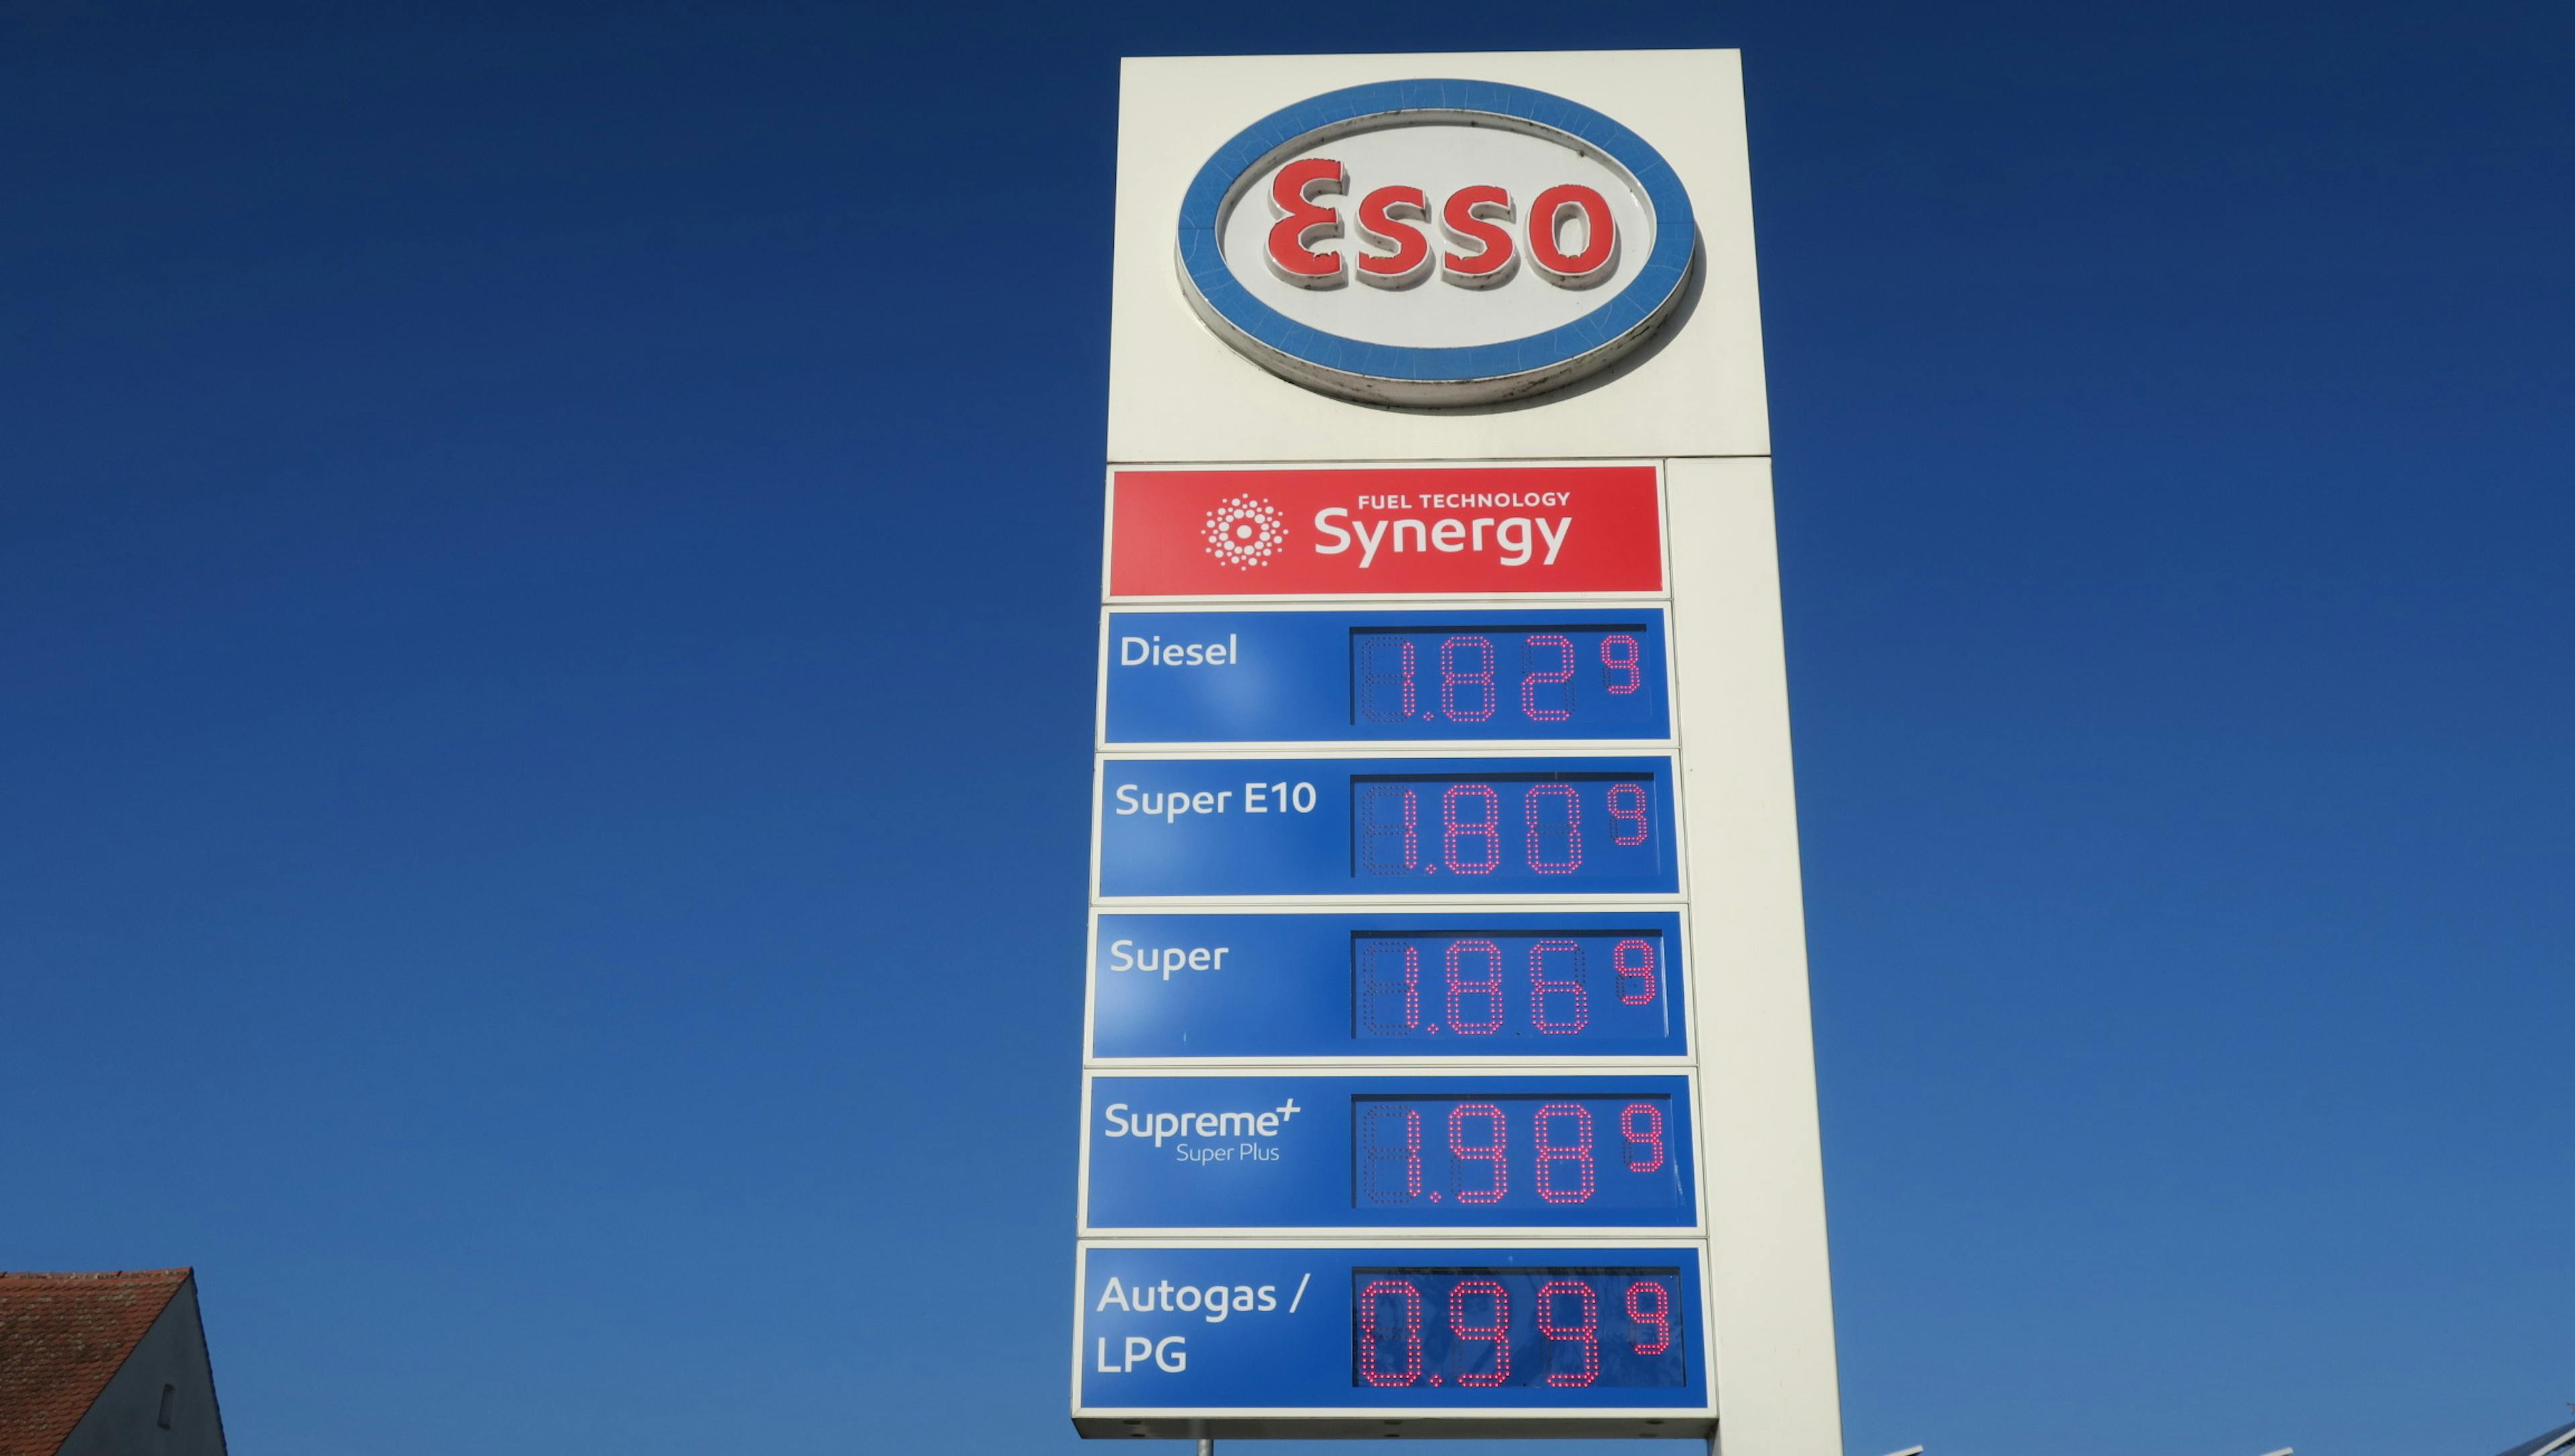 Essotafel mit Treibstoffpreisen